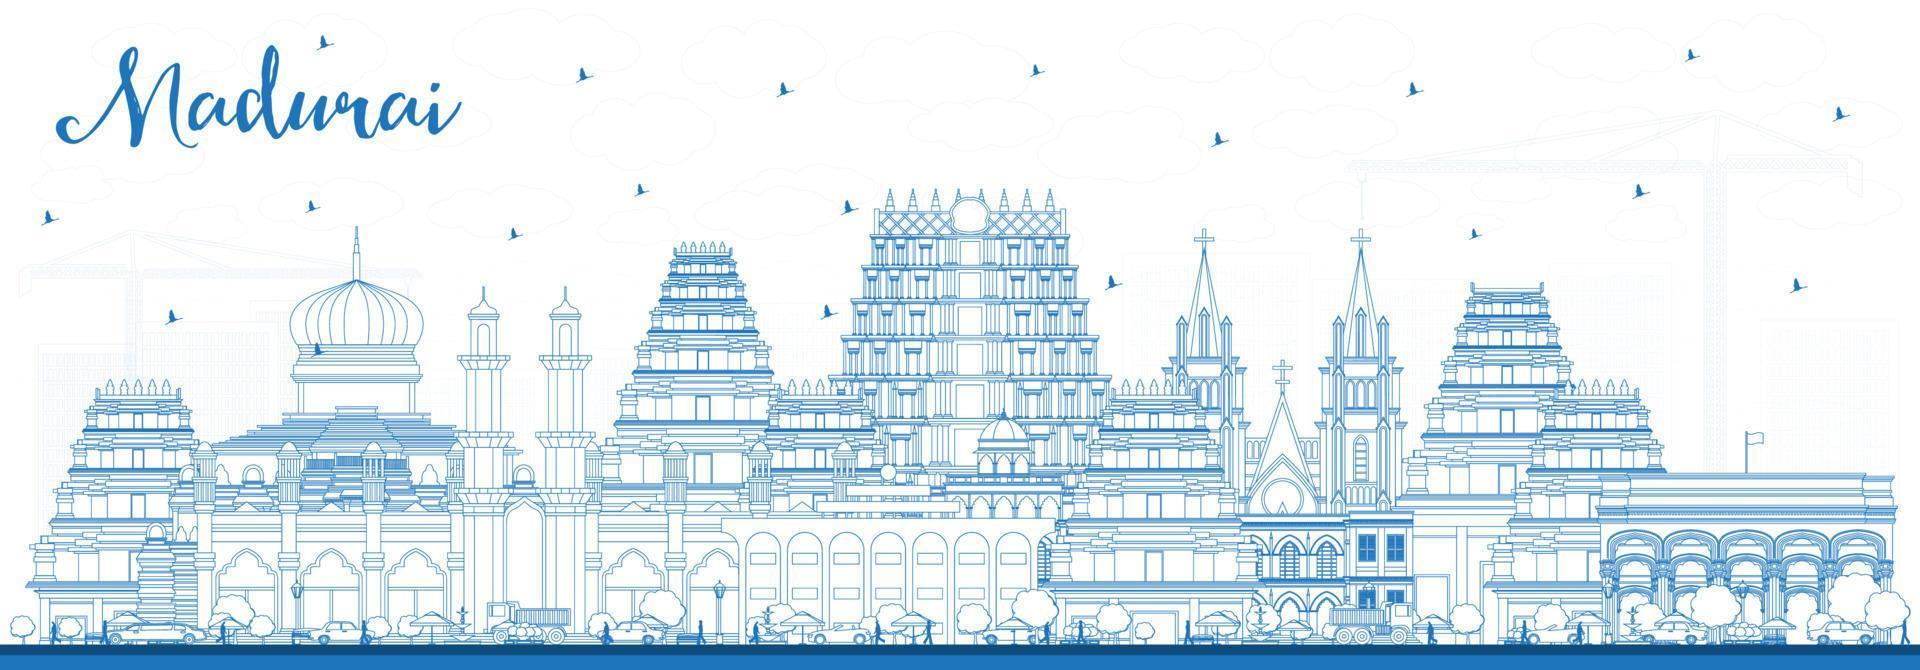 delineie o horizonte da cidade de madurai índia com edifícios azuis. vetor